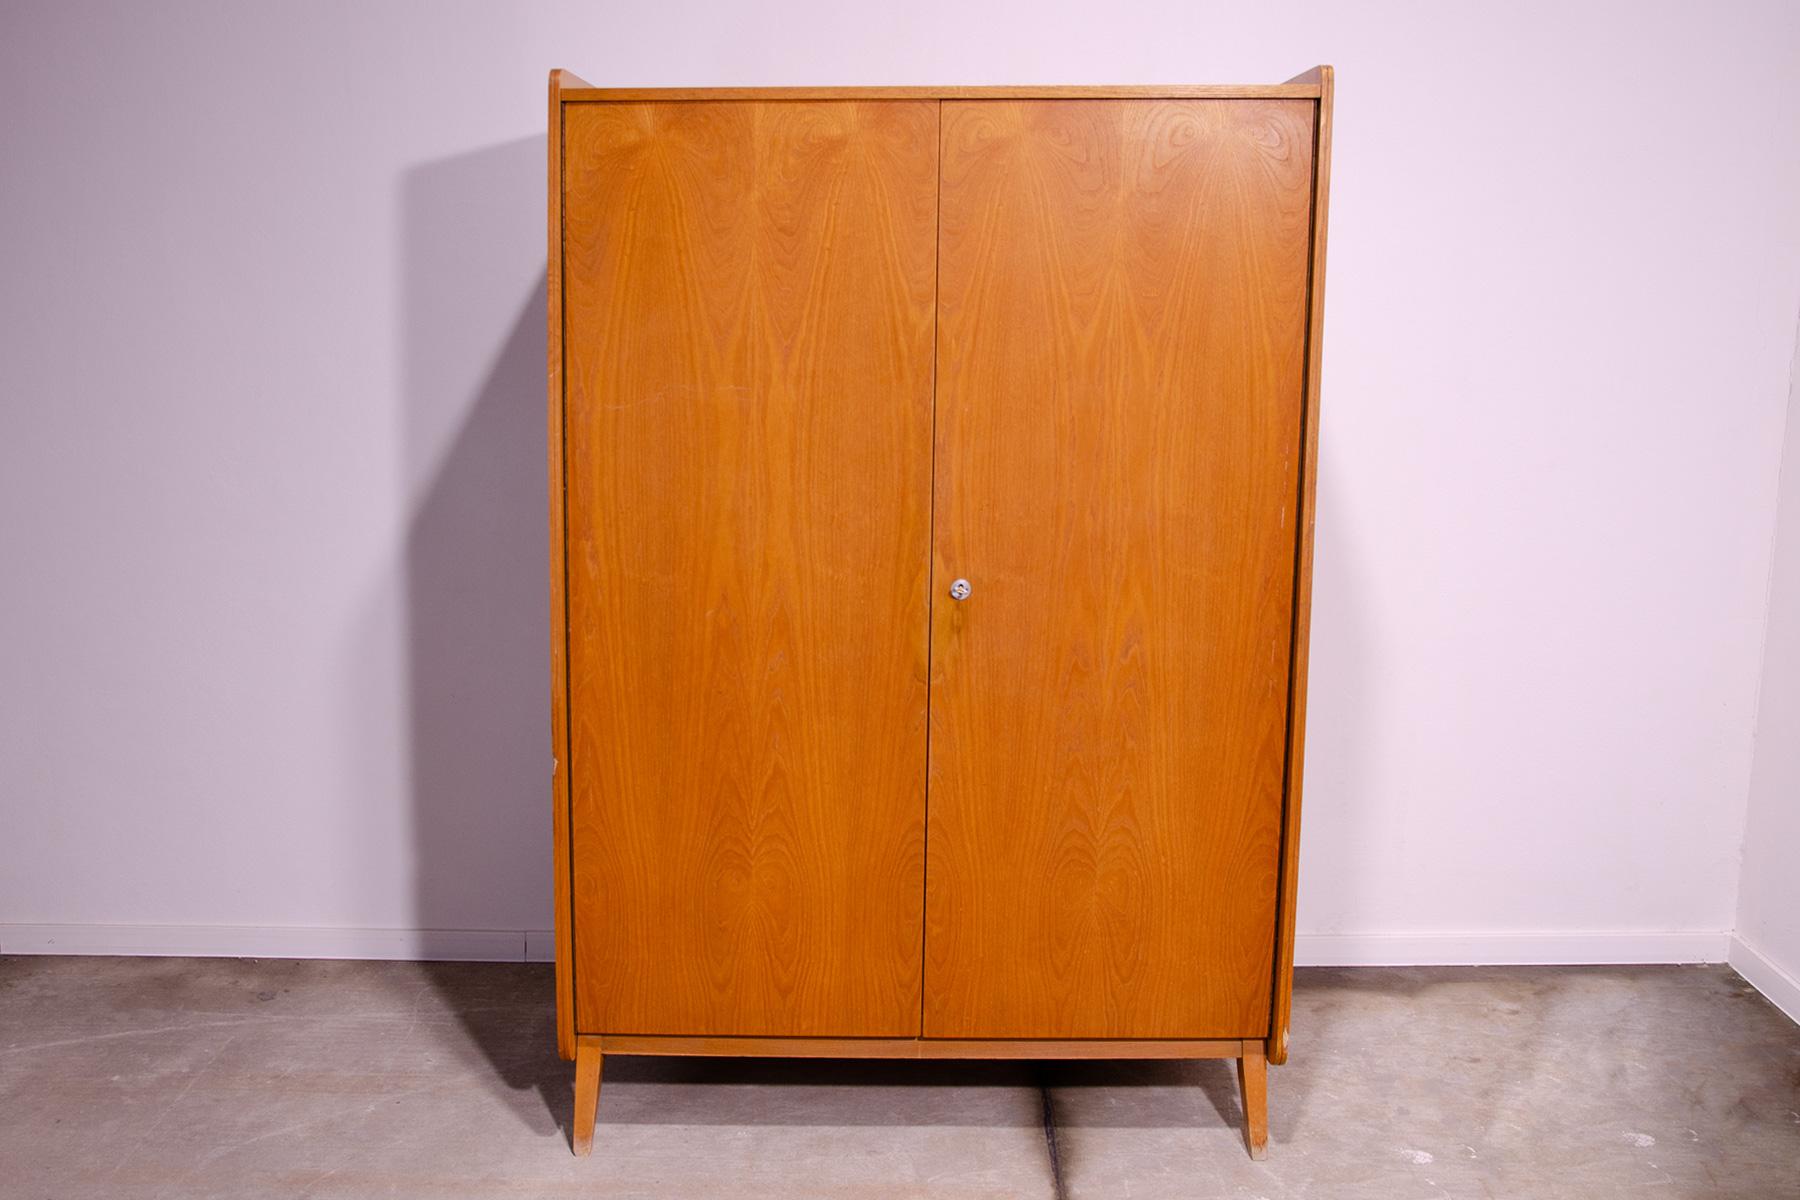 Cette armoire a été conçue par František Jirák pour la société Tatra nábytok dans l'ancienne Tchécoslovaquie dans les années 1960.

Il est fabriqué en bois de hêtre et en contreplaqué. Il y a 8 étagères à l'intérieur, mais elles sont